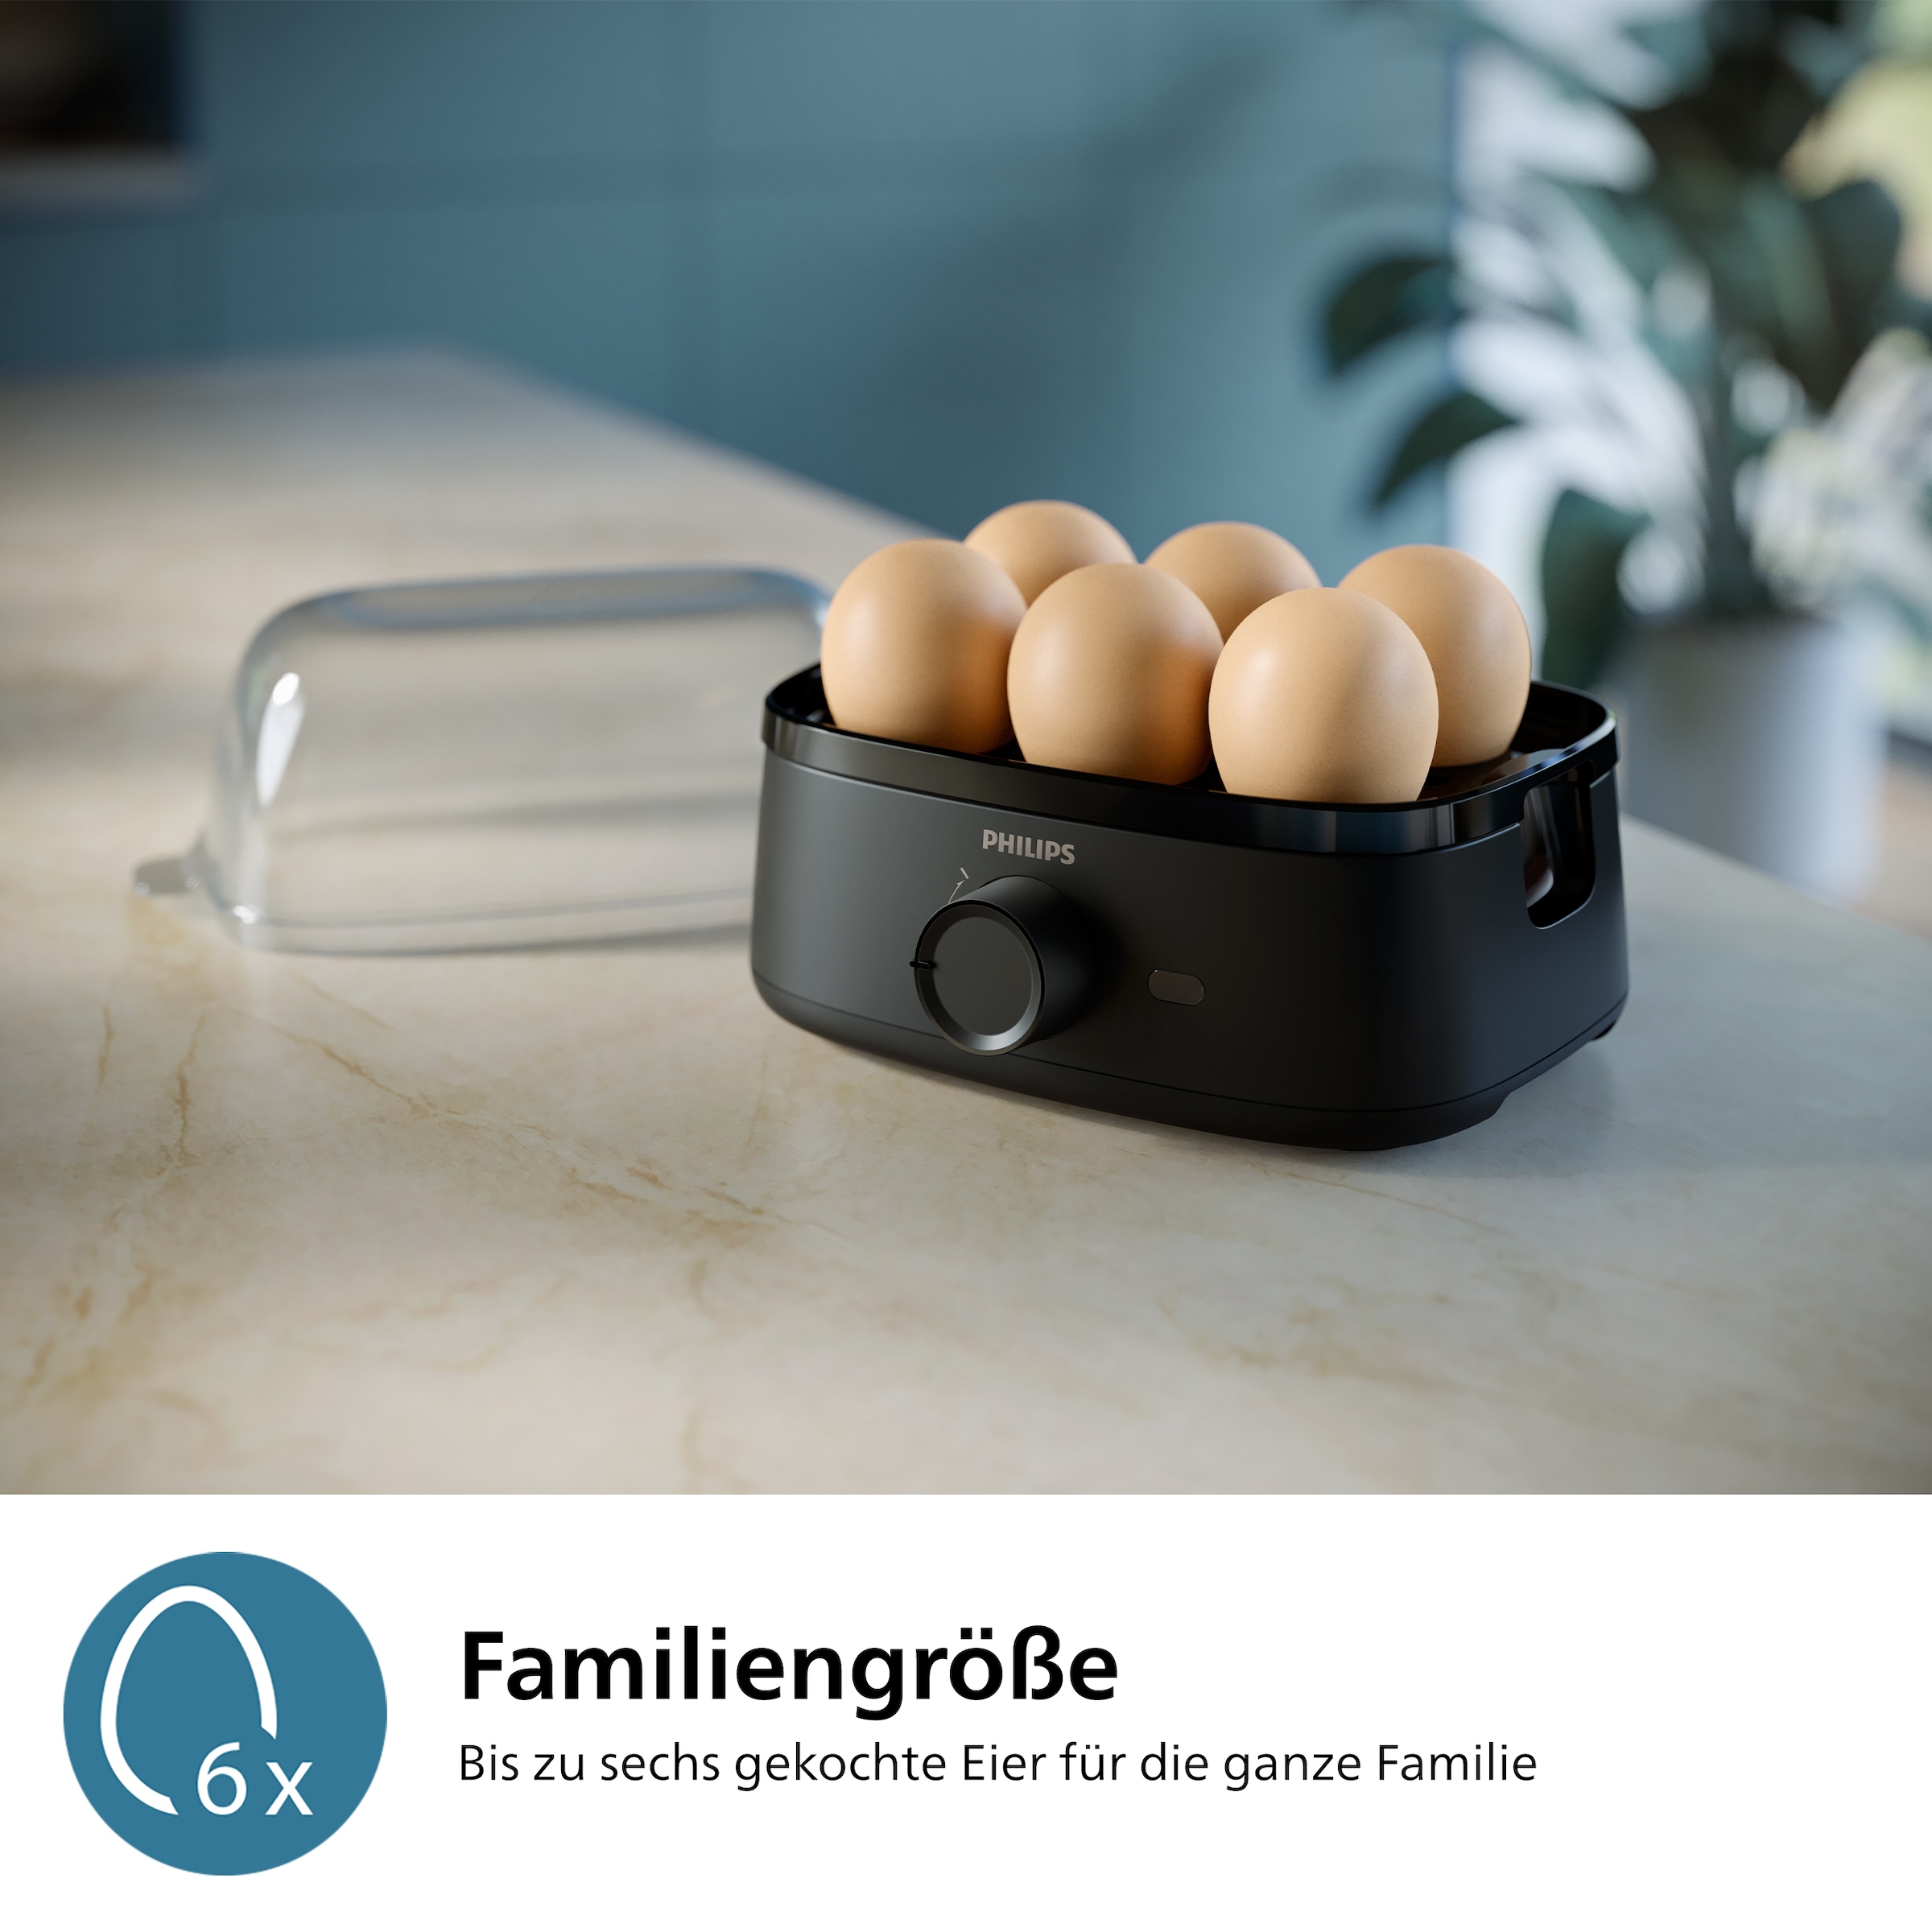 Philips Eierkocher »HD9137/90 3000 Series, Famieliengröße«, für 6 St. Eier, 400 W, mit dem Zubehör für pochierte Eier; verschiedene Kochstufen möglich